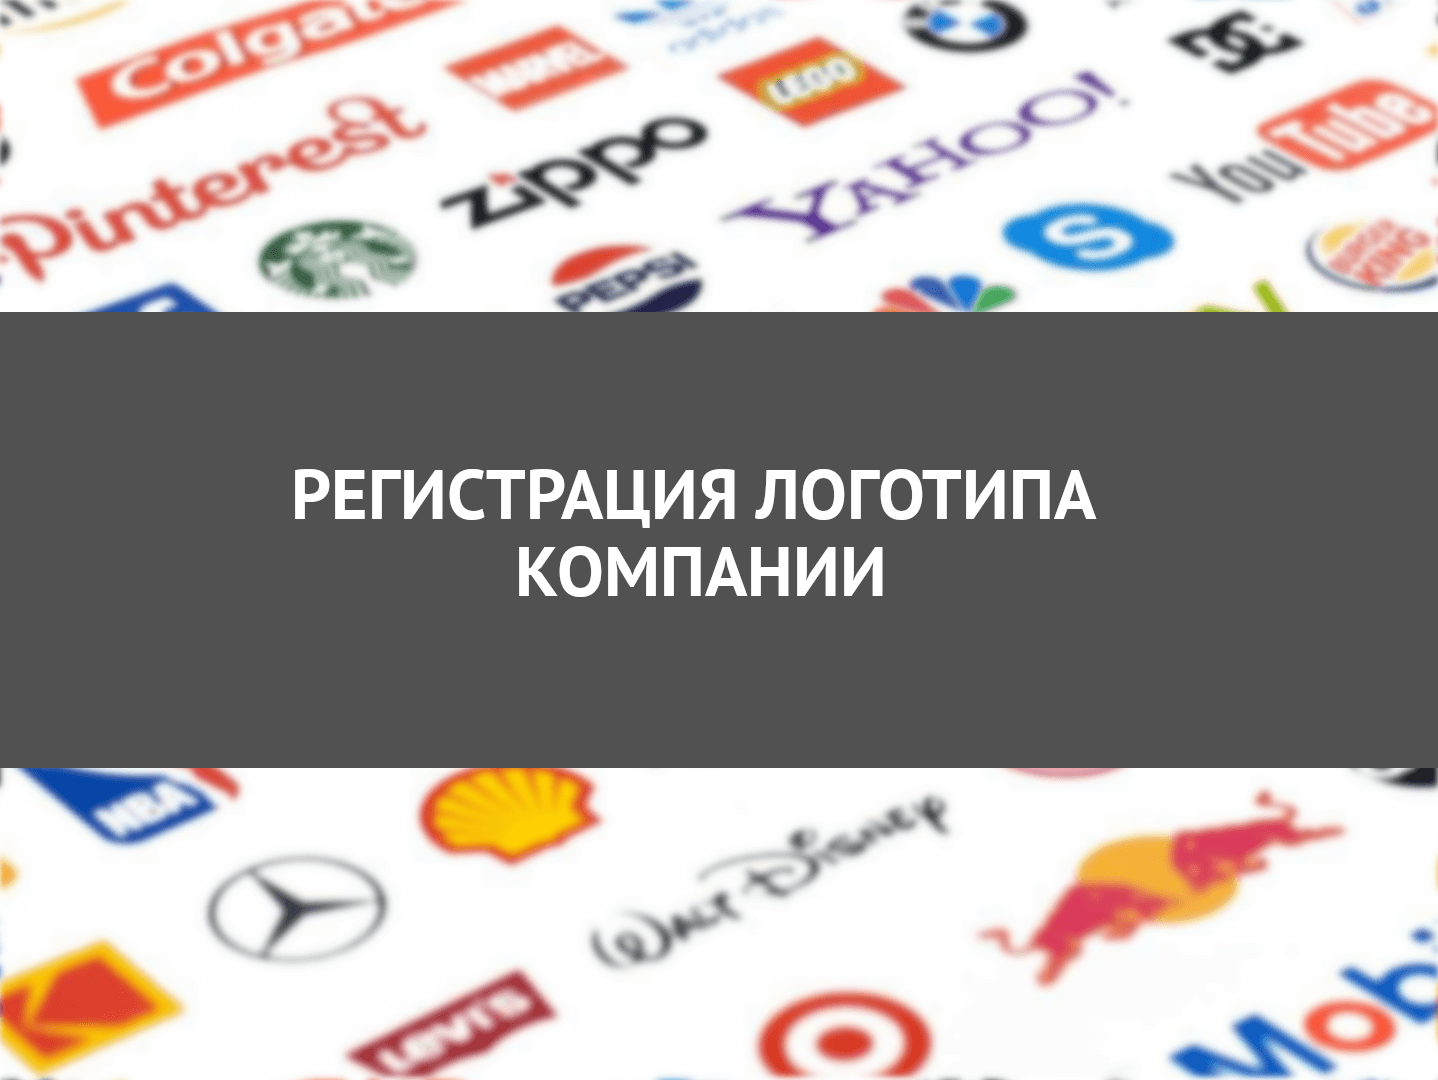 Зарегистрировать логотип в россии. Регистрация логотипа. Зарегистрированный логотип. Зарегистрировать логотип компании. Как регистрируют логотип.